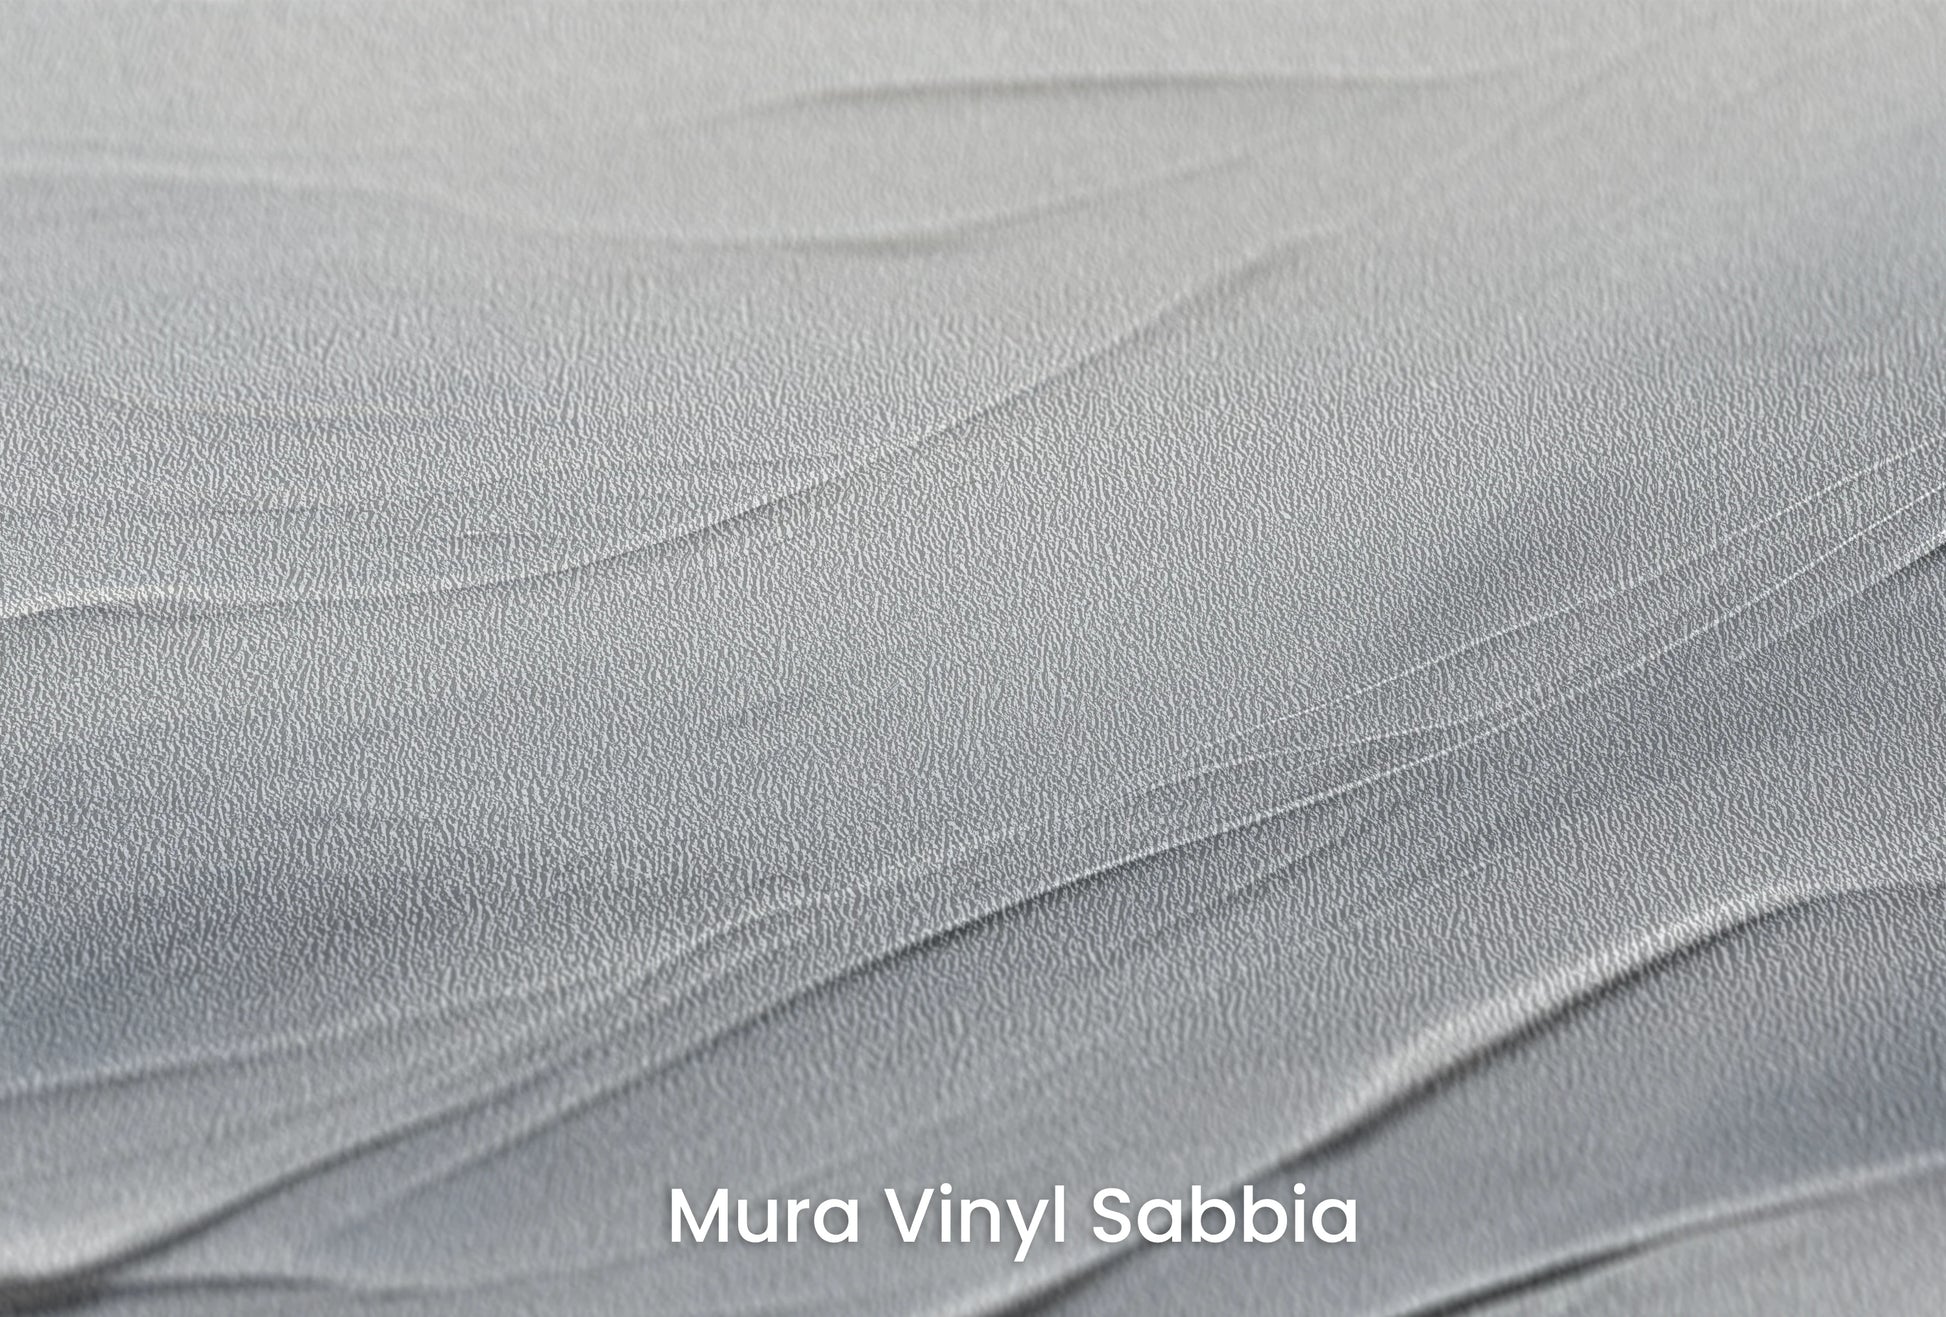 Zbliżenie na artystyczną fototapetę o nazwie Silvered Waves na podłożu Mura Vinyl Sabbia struktura grubego ziarna piasku.